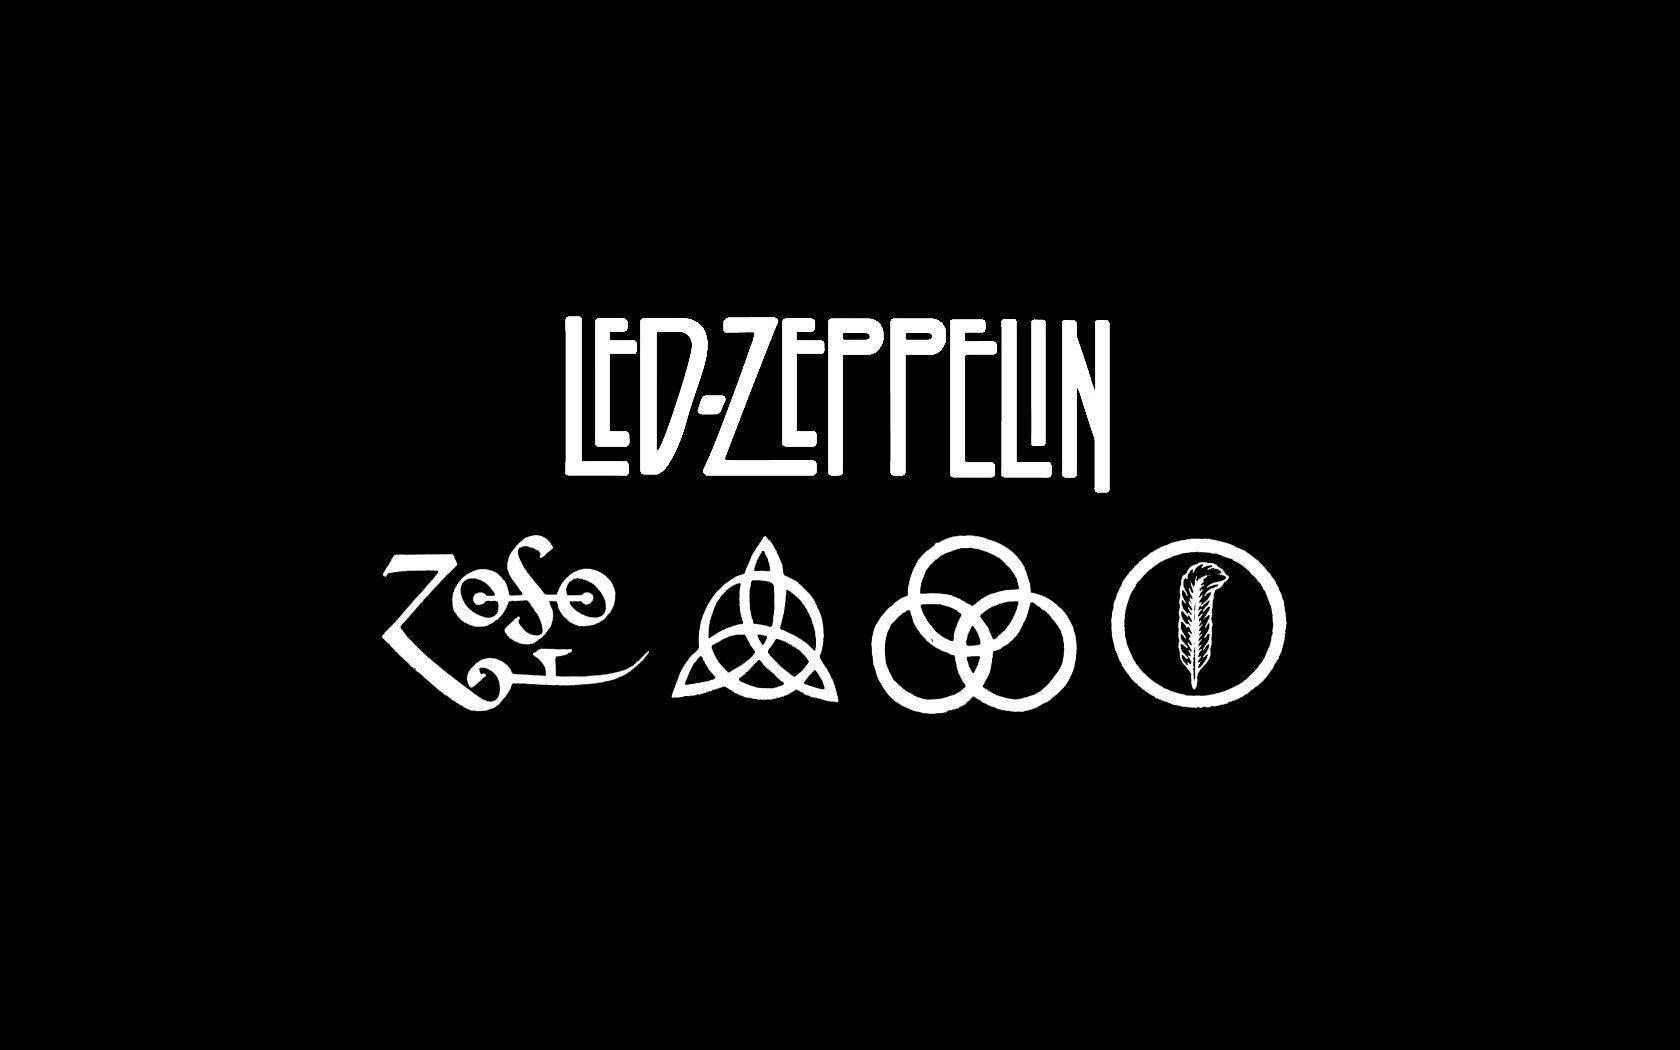 Led Zeppelin Computer Wallpapers, Desktop Backgrounds 1680x1050 Id